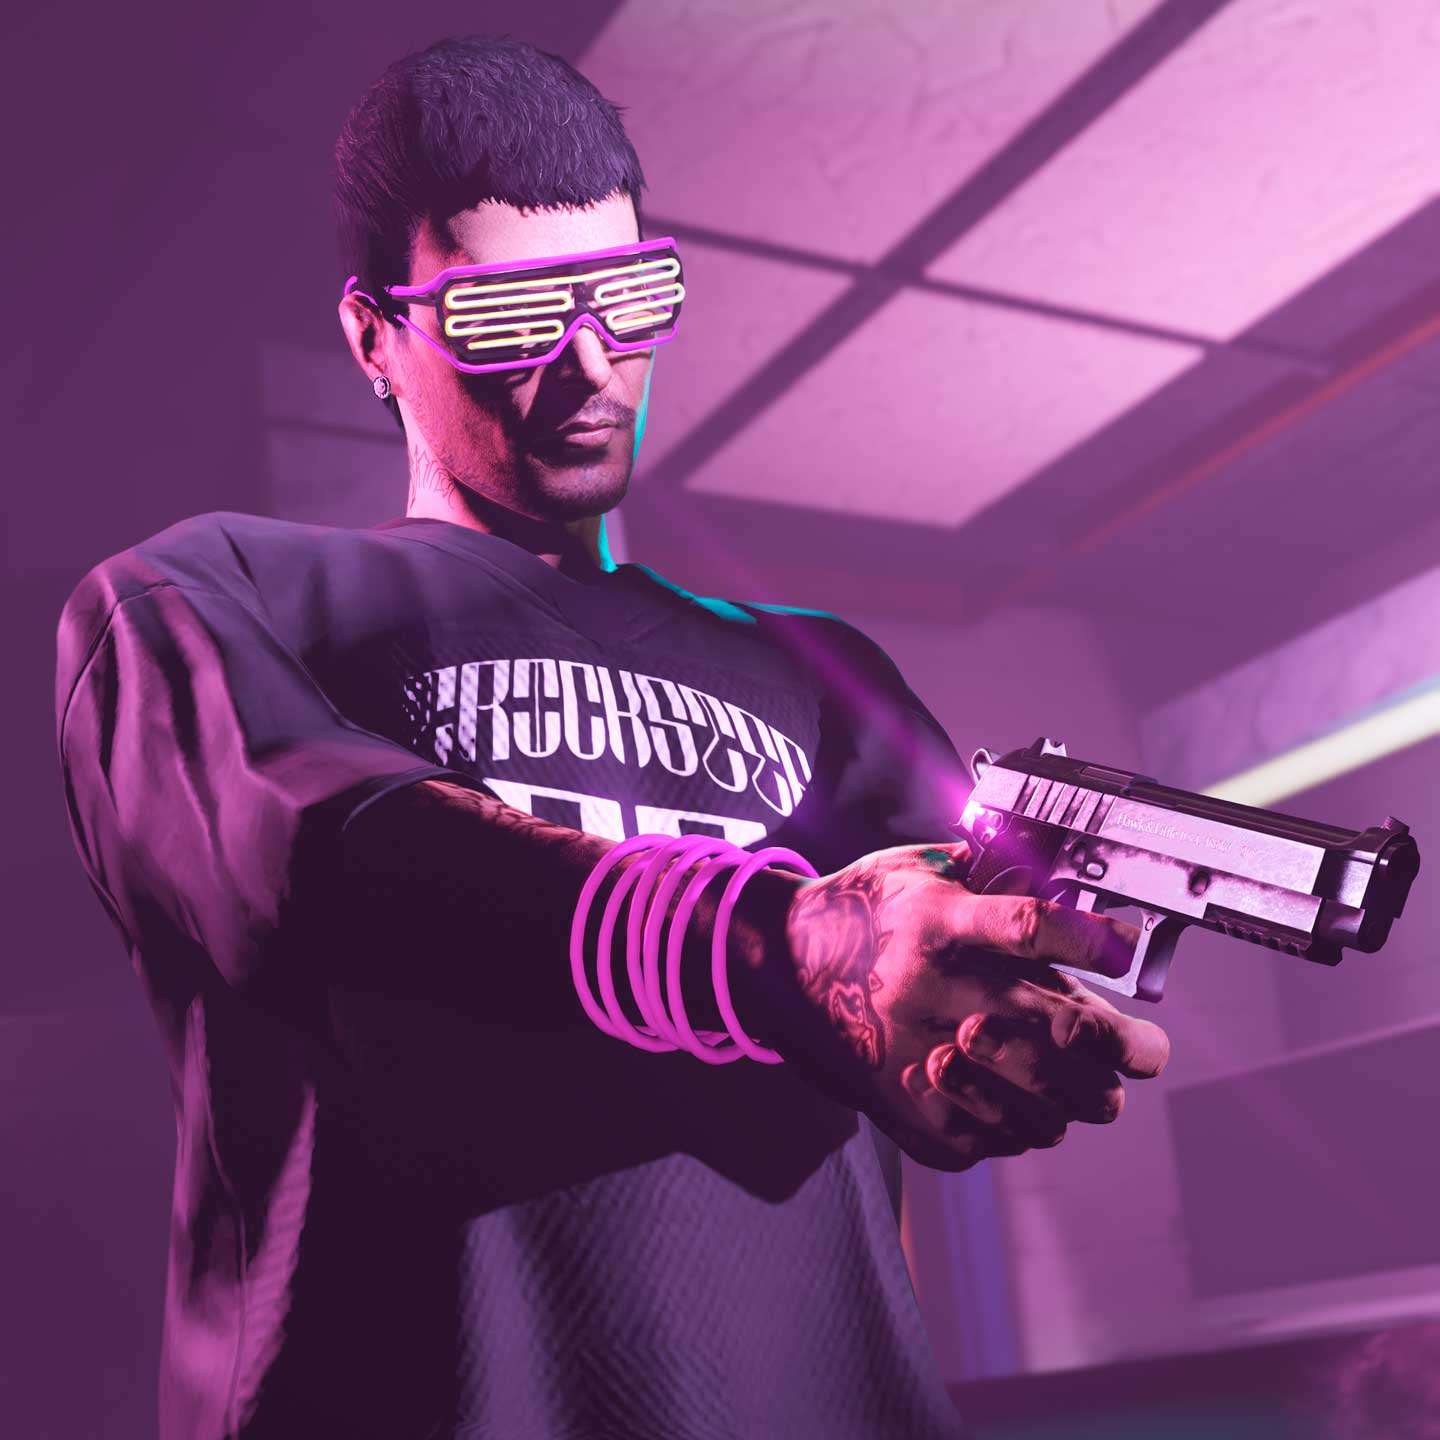 gta 5 pink shot gun